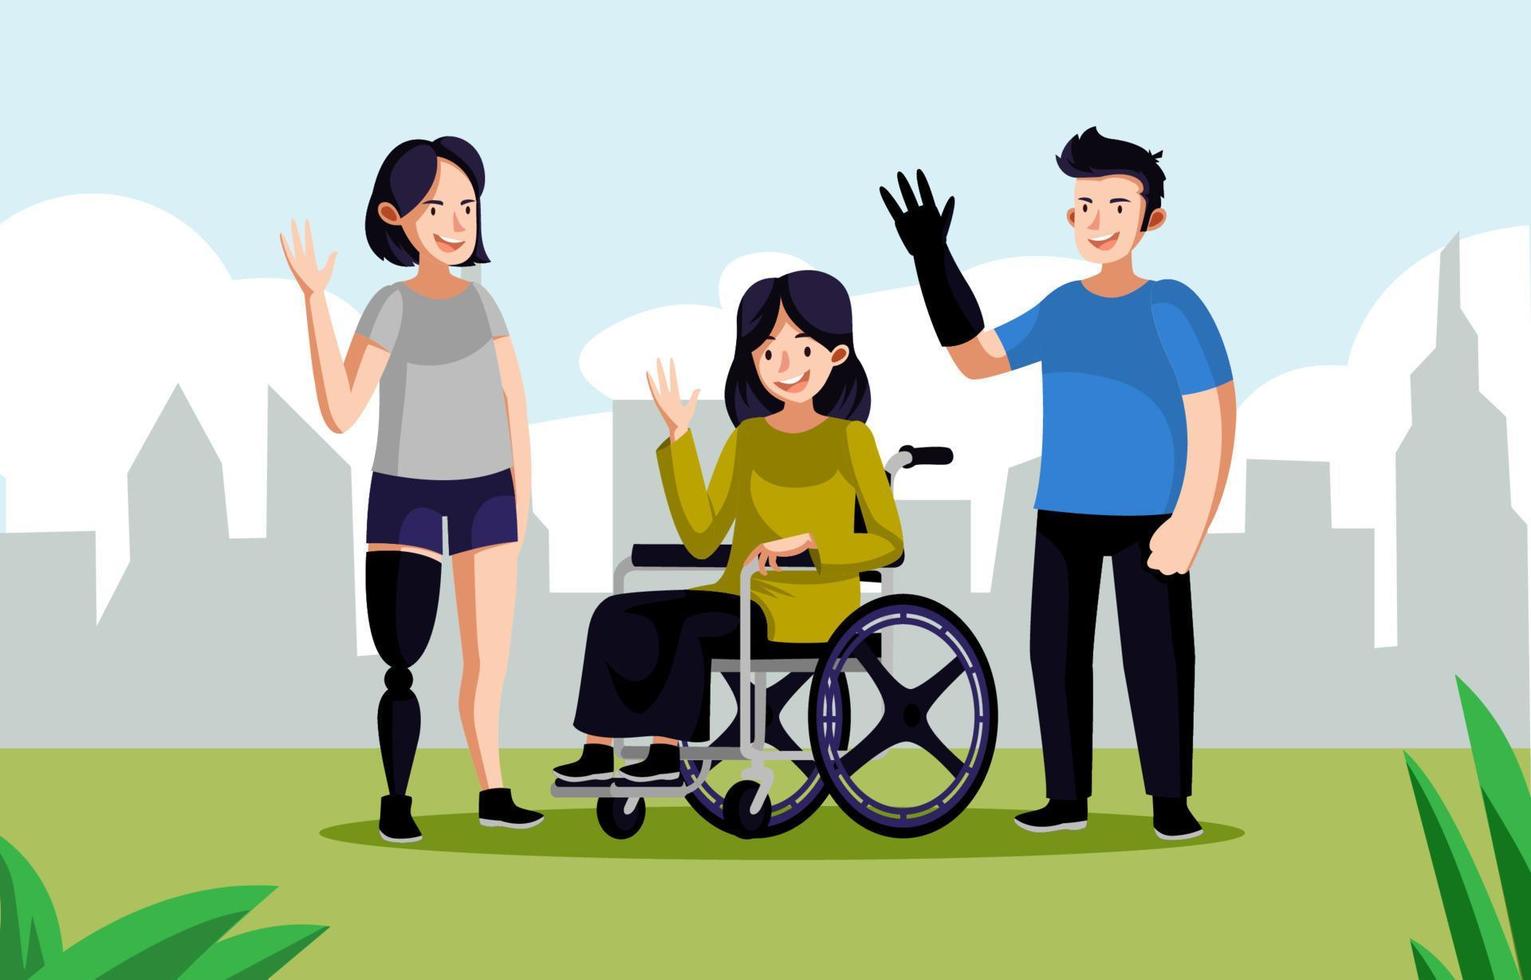 Menschen mit Behinderungen im Leben stärken vektor